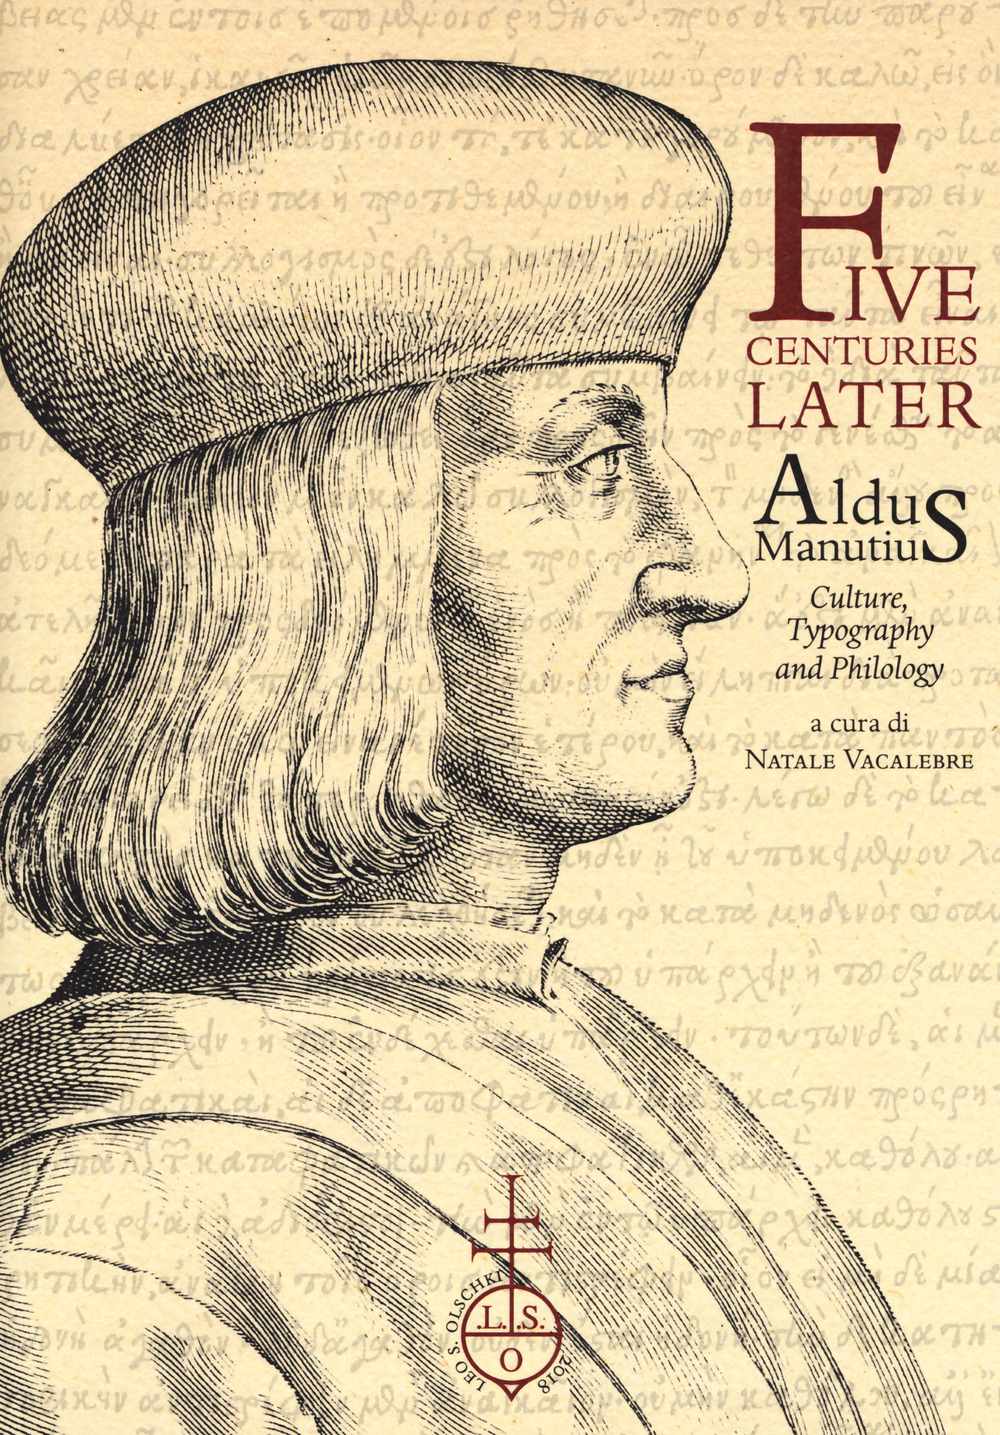 Libri Five Centuries Later. Aldus Manutius. Culture, Typography And Philology NUOVO SIGILLATO, EDIZIONE DEL 01/01/2018 SUBITO DISPONIBILE